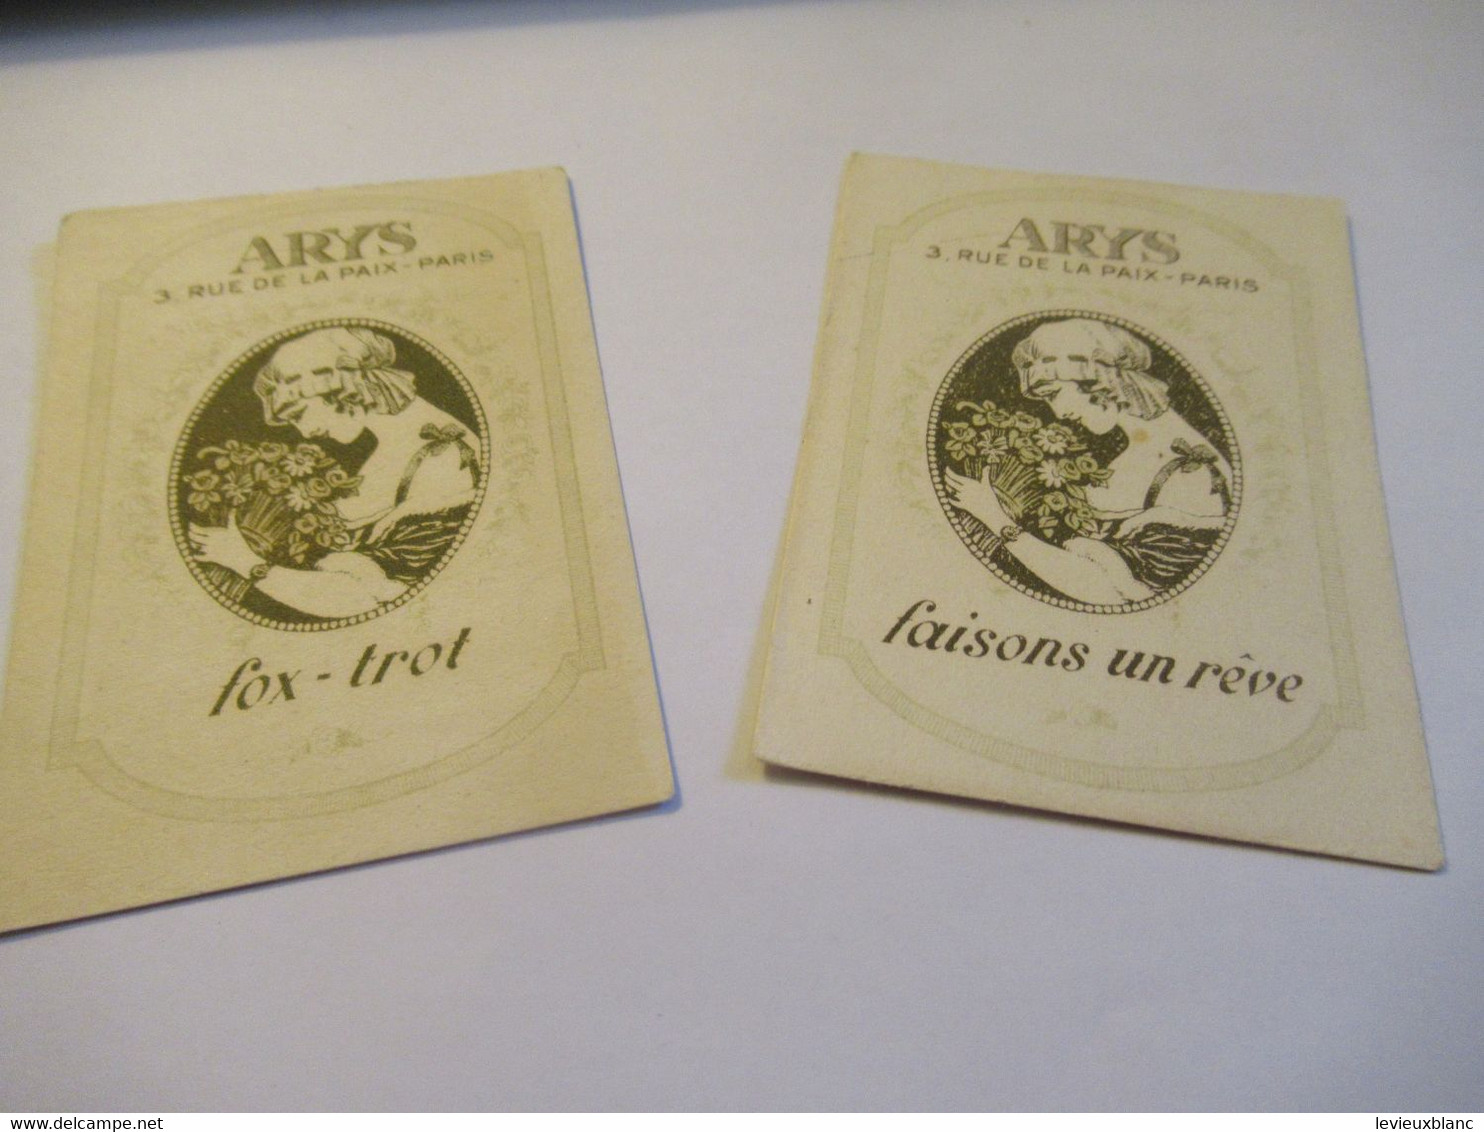 2 Petites Cartes Publicitaires Parfumées/ ARYS, 2 Rue De La Paix Paris/Fox-Trot/ Faisons Un Rêve/Vers 1920   PARF240 - Anciennes (jusque 1960)